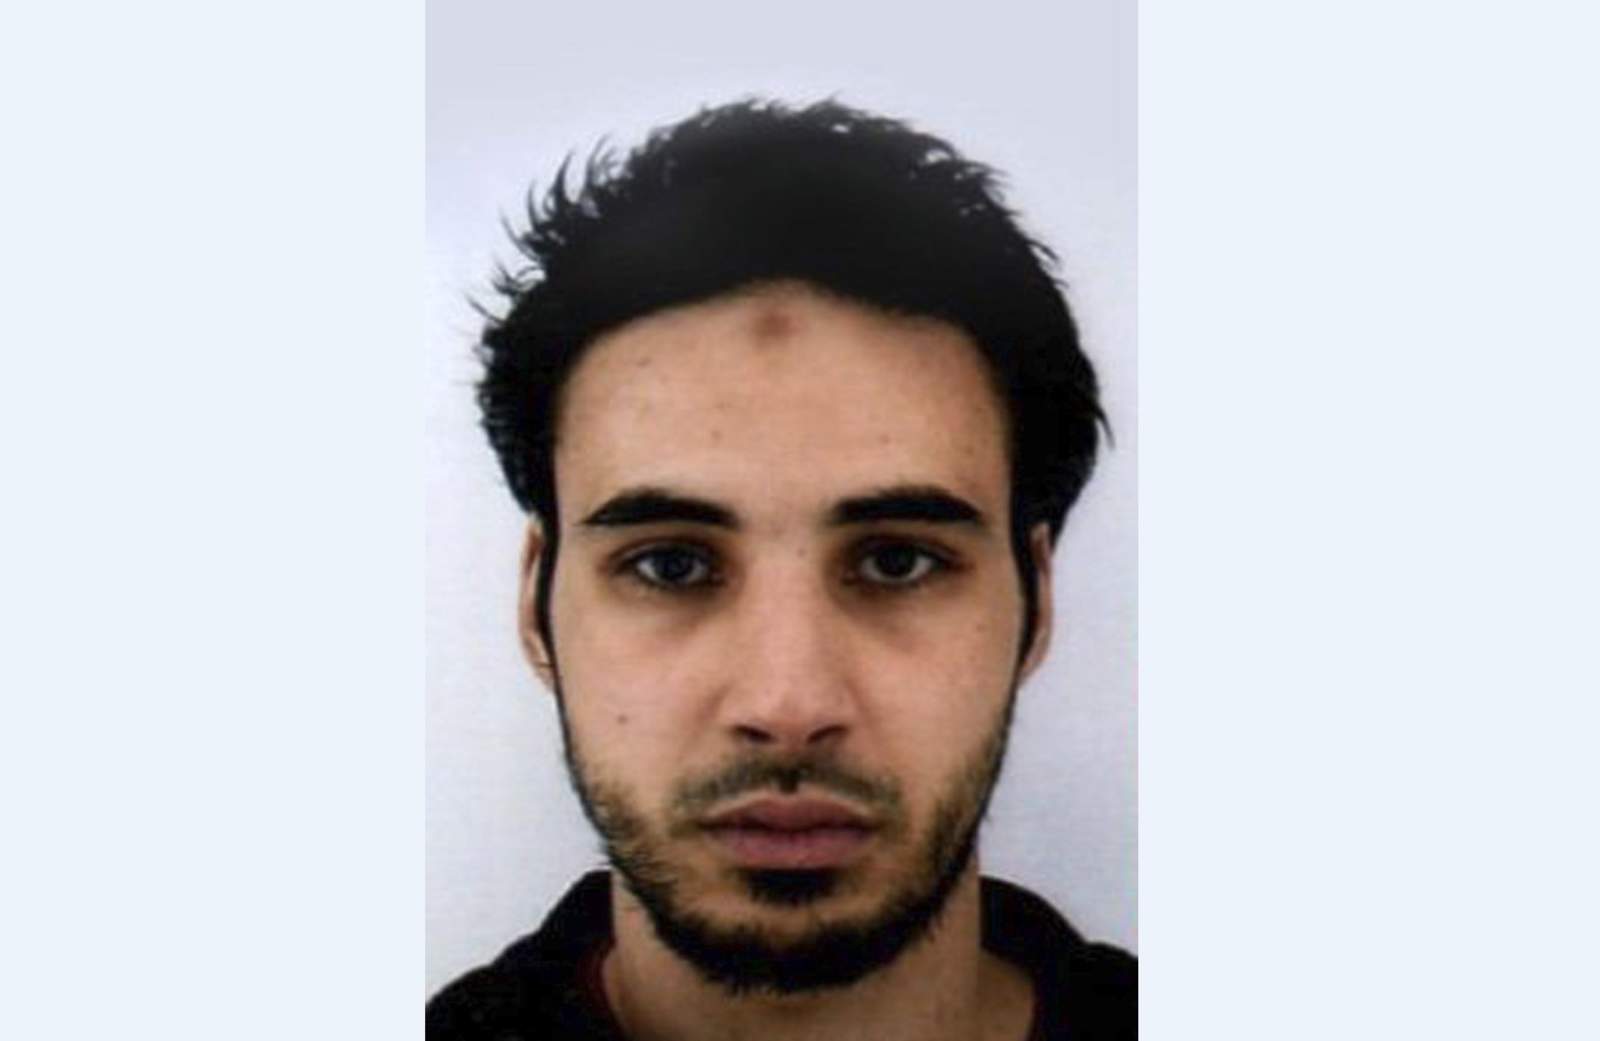 Francia espera identificación para confirmar muerte del terrorista. Noticias en tiempo real